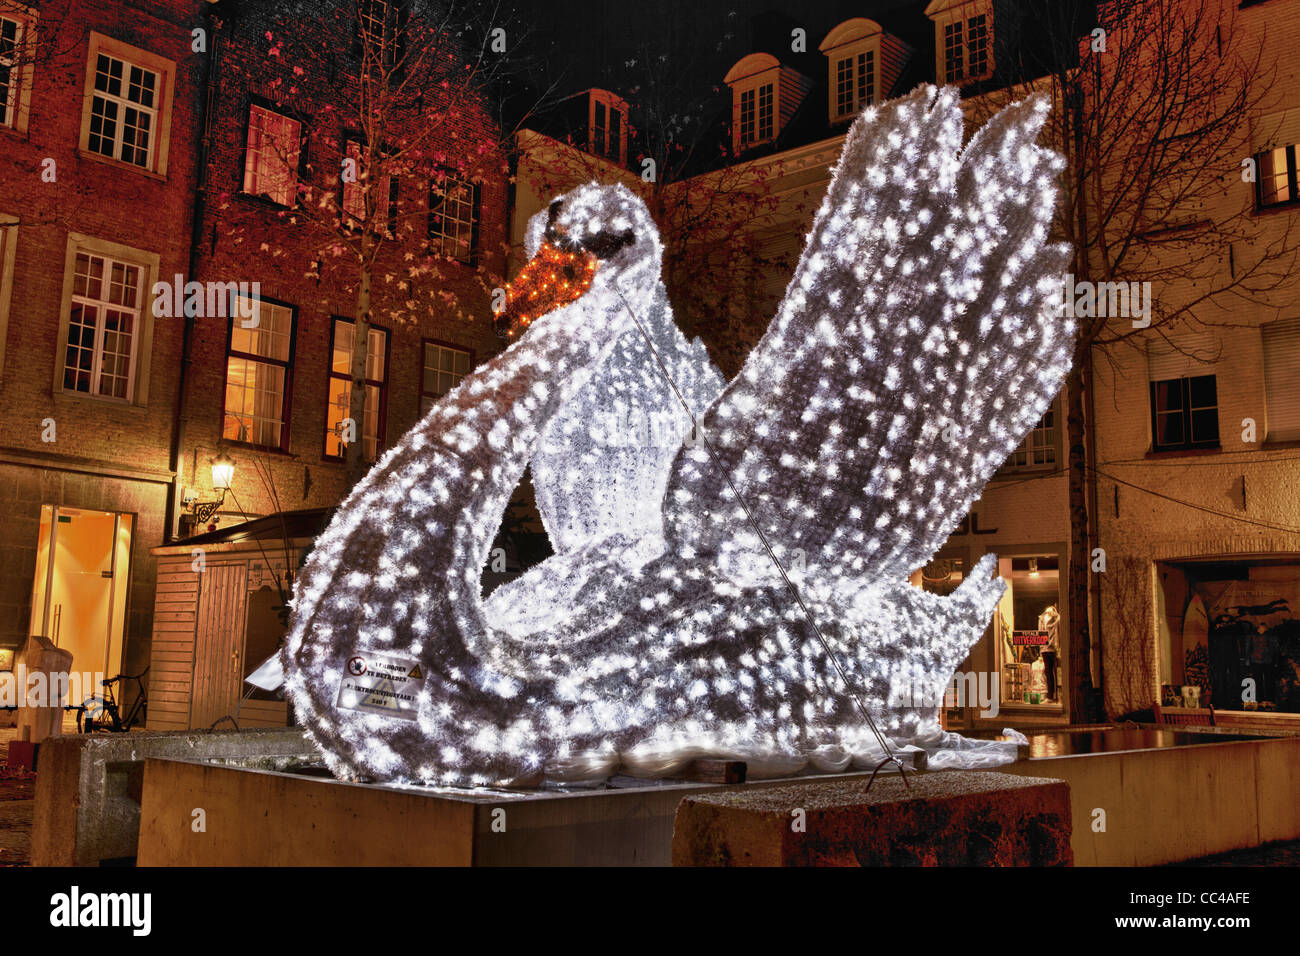 Décoration de Noël avec un cygne statue faite par des feux ayant une apparence de cristal. Banque D'Images